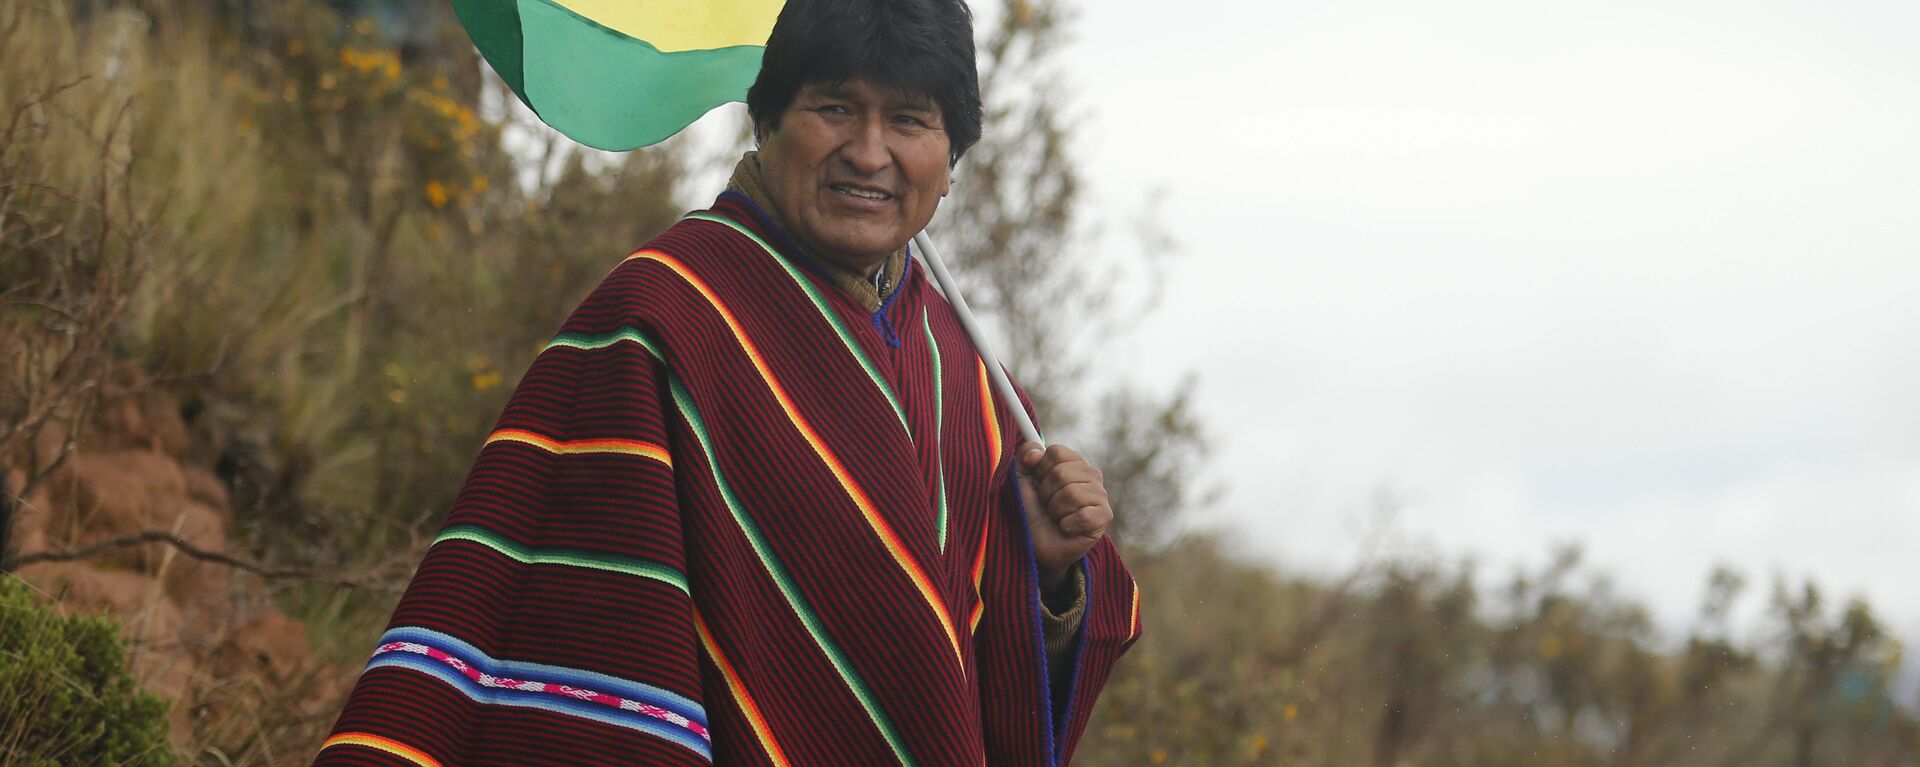 Evo Morales, expresidente de Bolivia - Sputnik Mundo, 1920, 04.05.2021